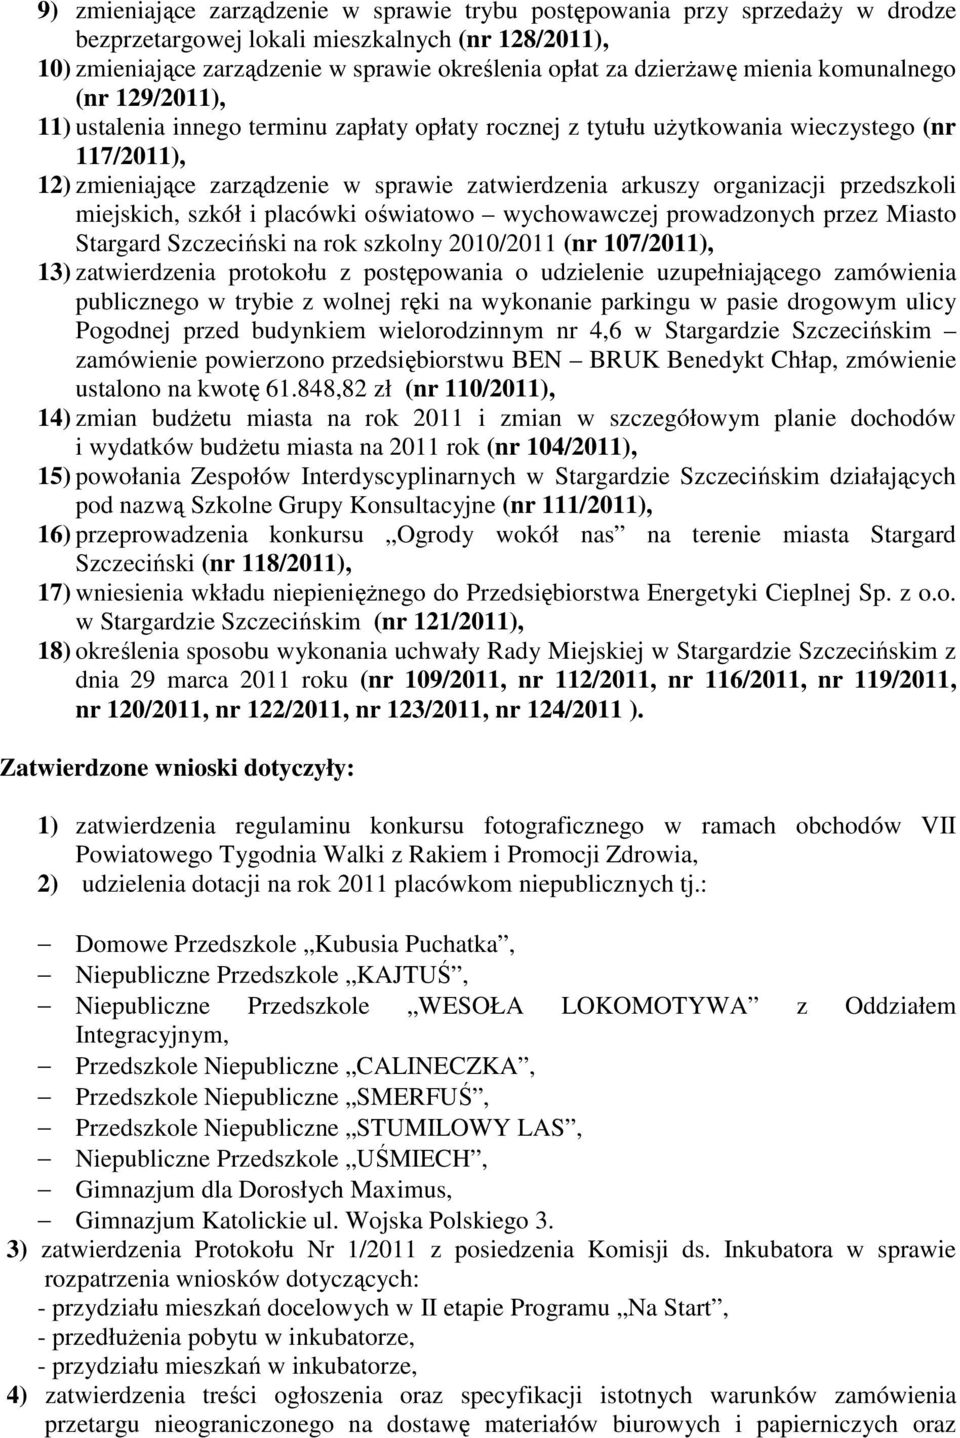 organizacji przedszkoli miejskich, szkół i placówki oświatowo wychowawczej prowadzonych przez Miasto Stargard Szczeciński na rok szkolny 2010/2011 (nr 107/2011), 13) zatwierdzenia protokołu z